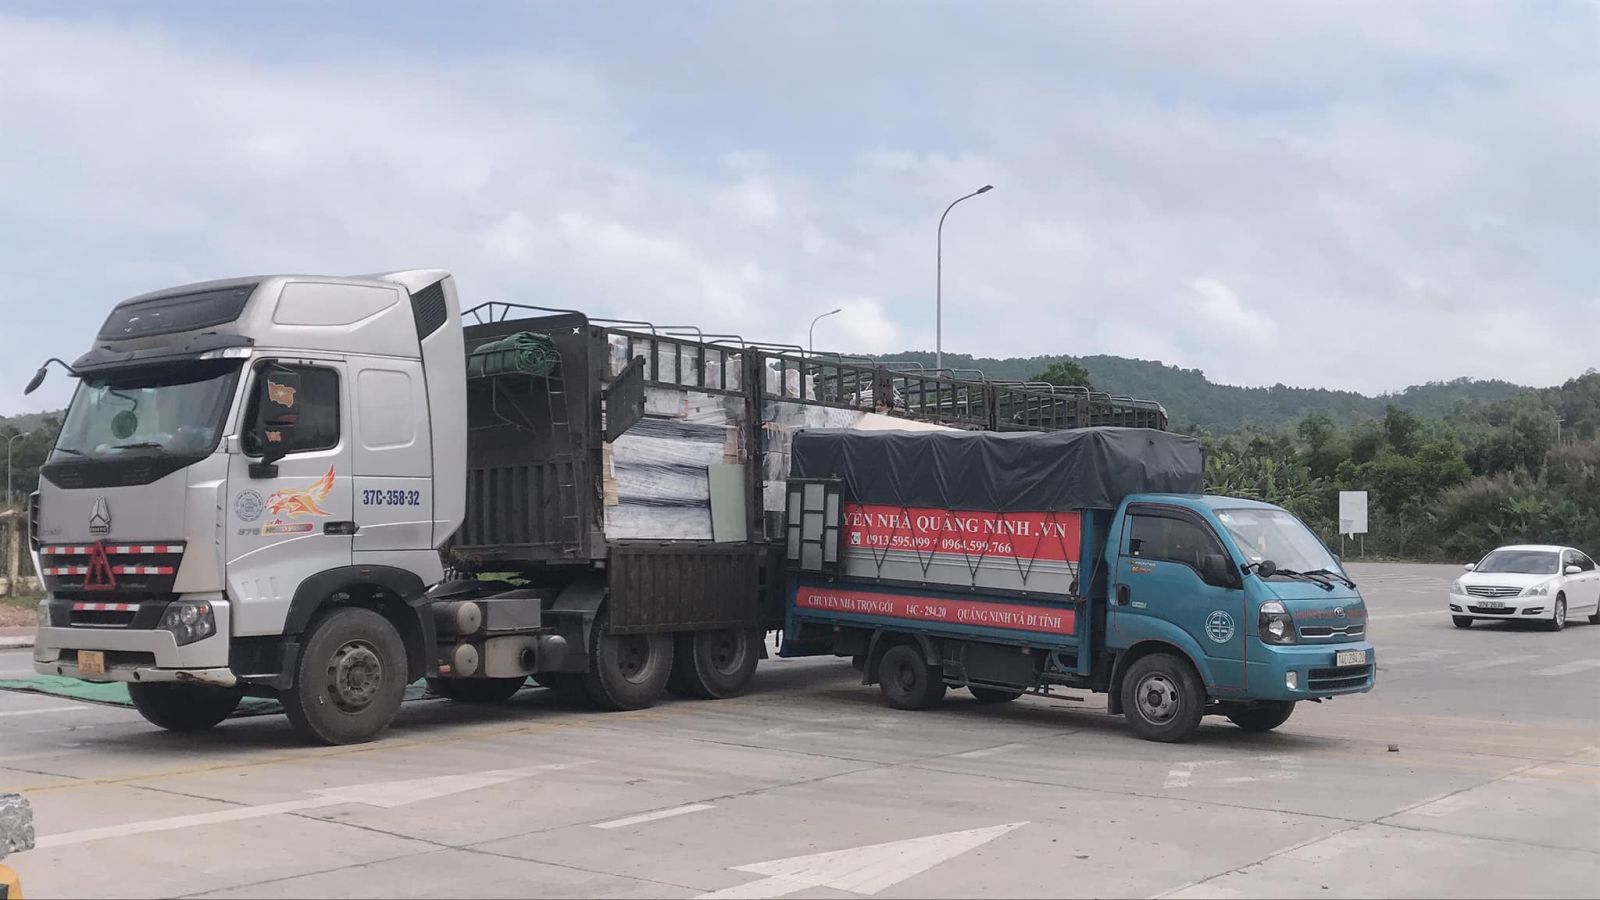 Thuê xe tải chuyển tải hàng tại Quảng Ninh